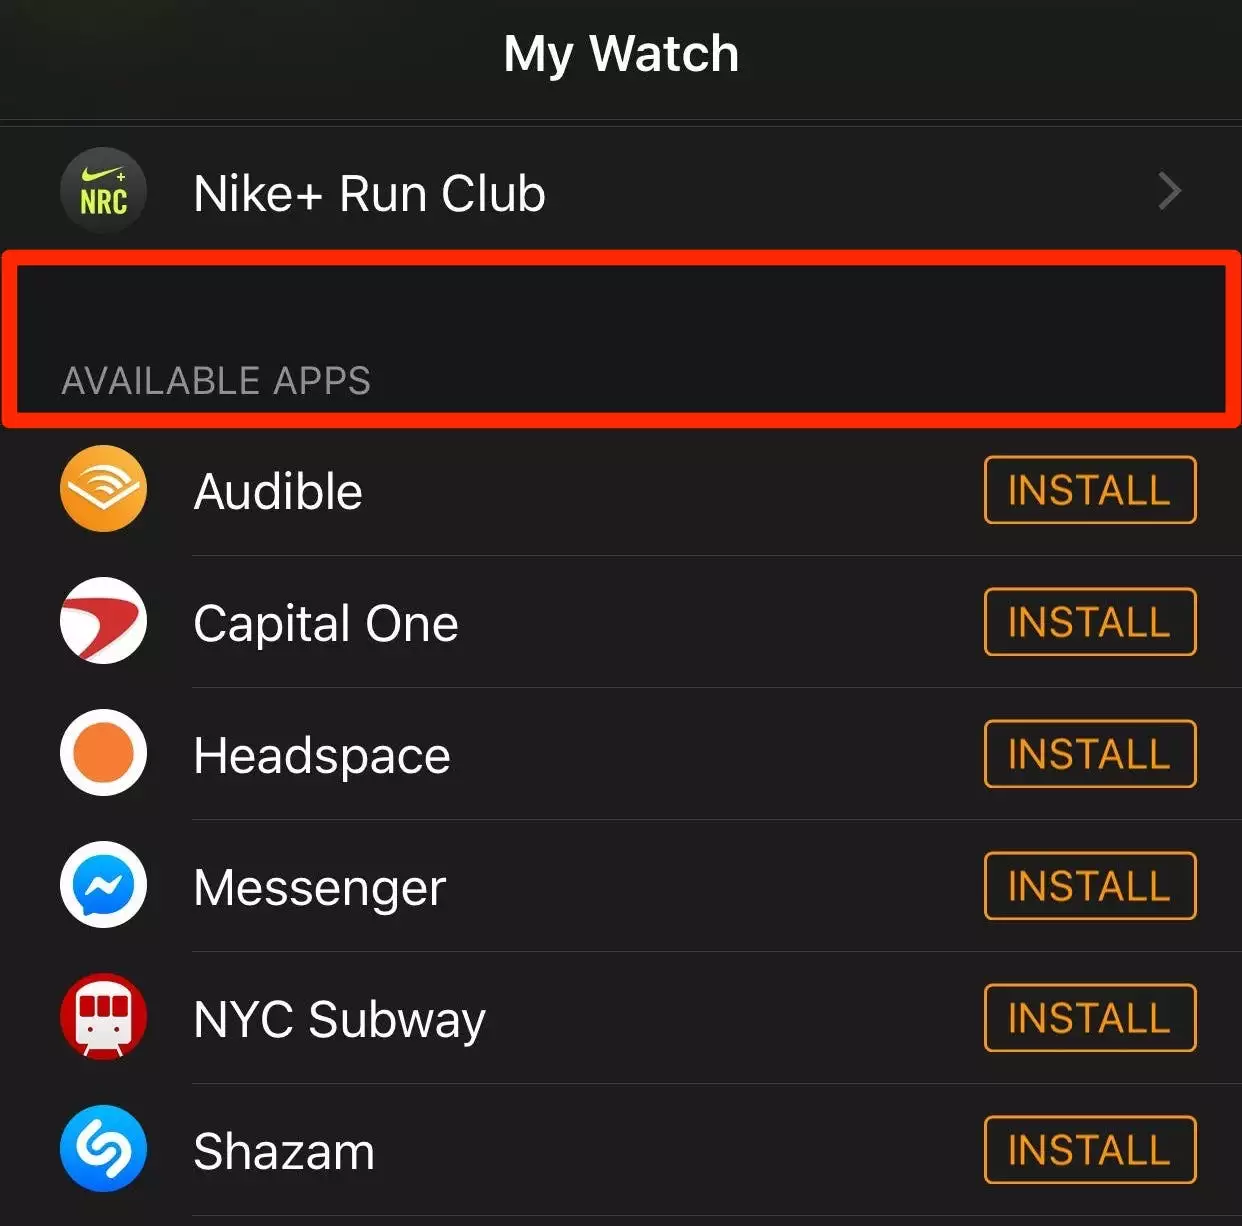 如何通过 App Store 或 Watch 应用向 Apple Watch 添加应用